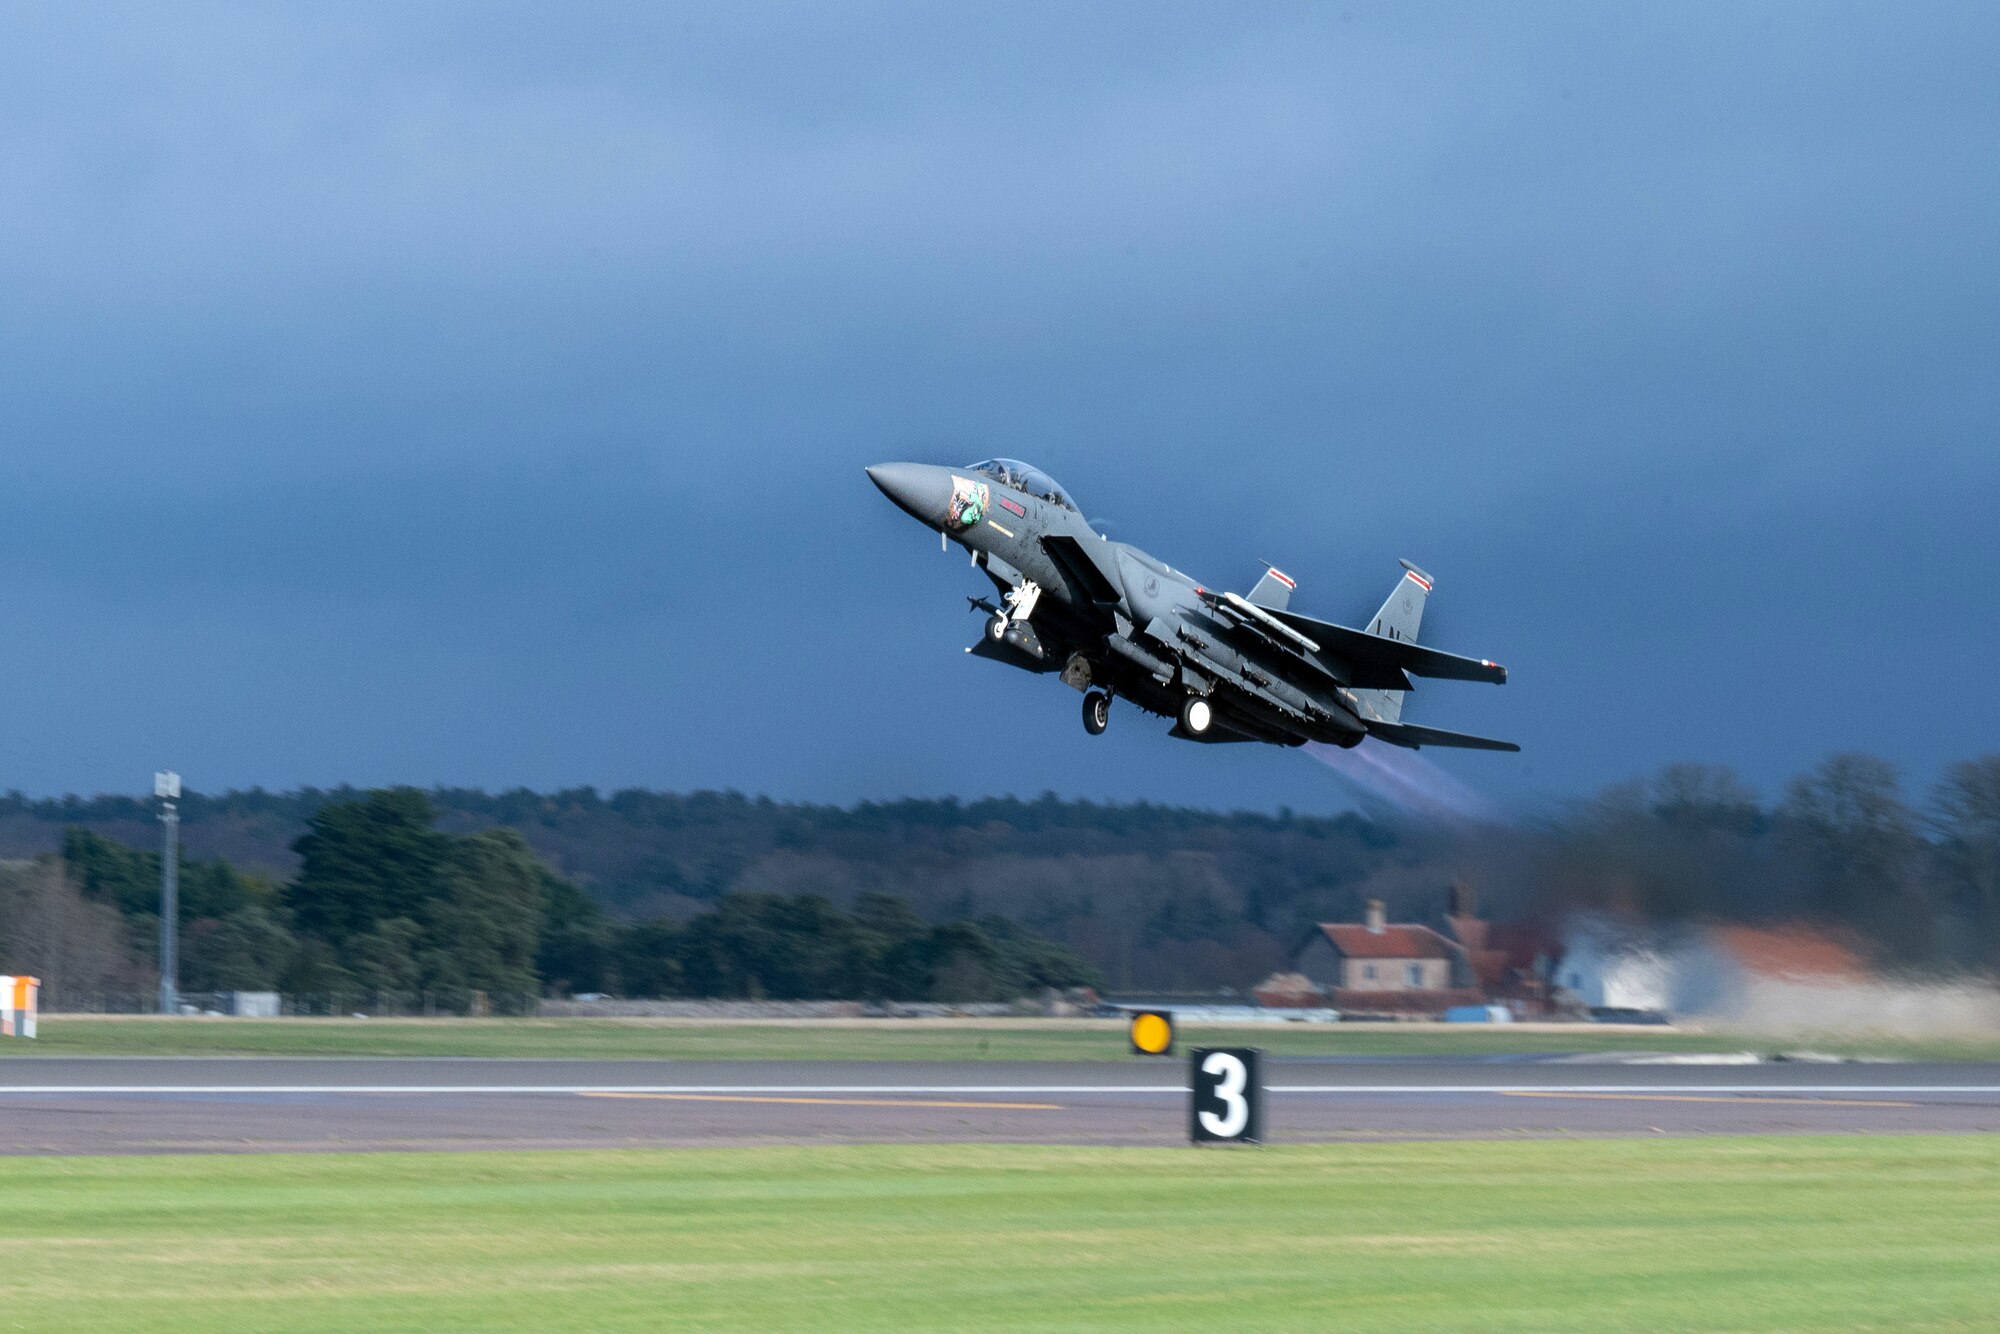 F-15E Strike Eagle takes off